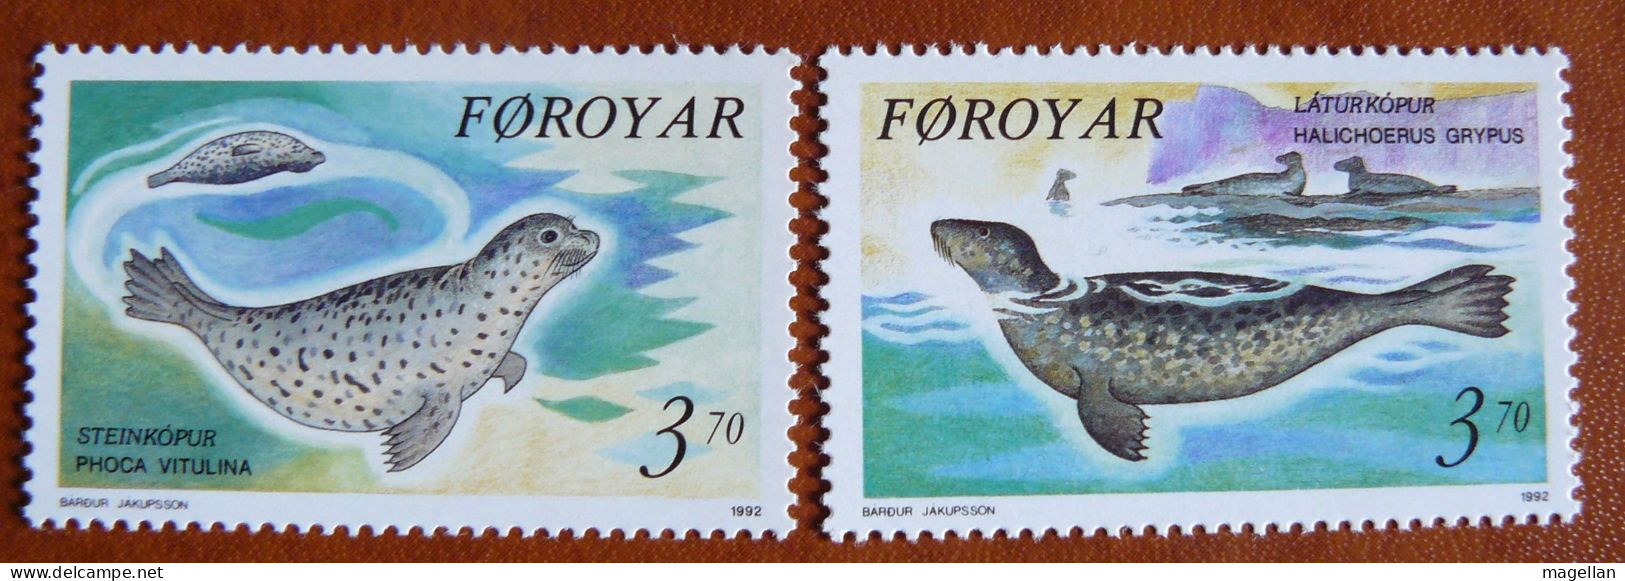 Iles Féroé - Faroe Islands - Färöer Inseln - Yvert N° 231/232 Neufs ** (MNH) - Mammifères Marins - Féroé (Iles)